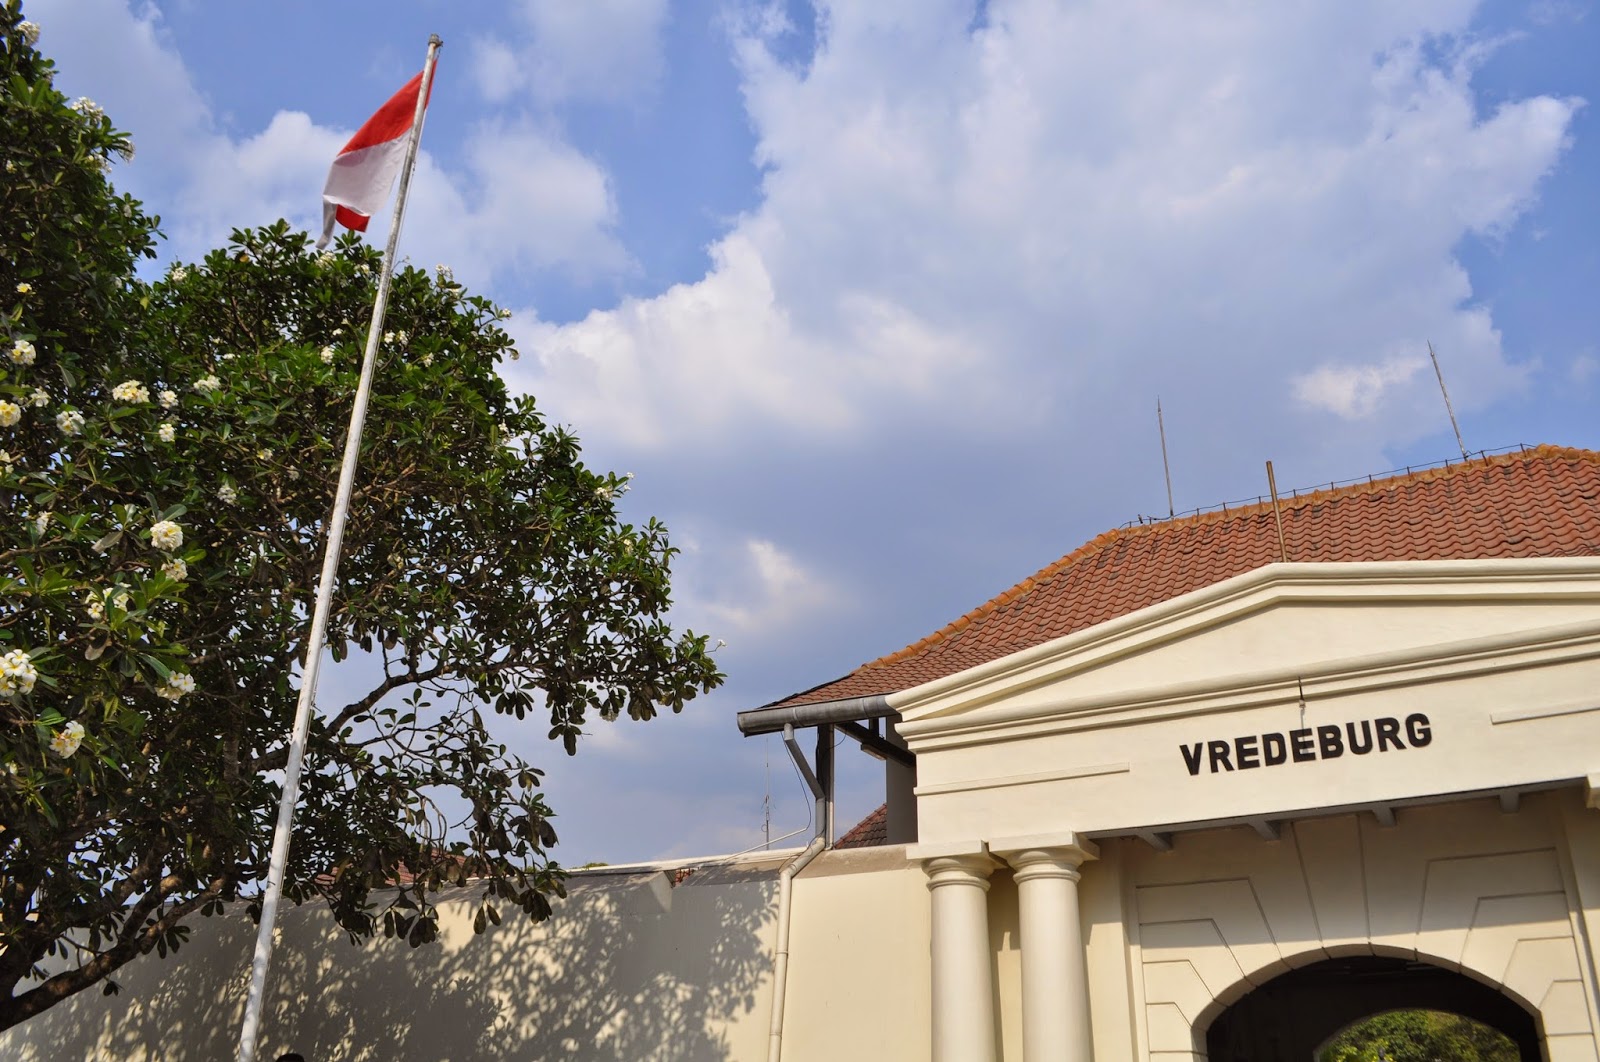 iszati Day 5 Yogyakarta Museum Benteng  Vredeburg and 